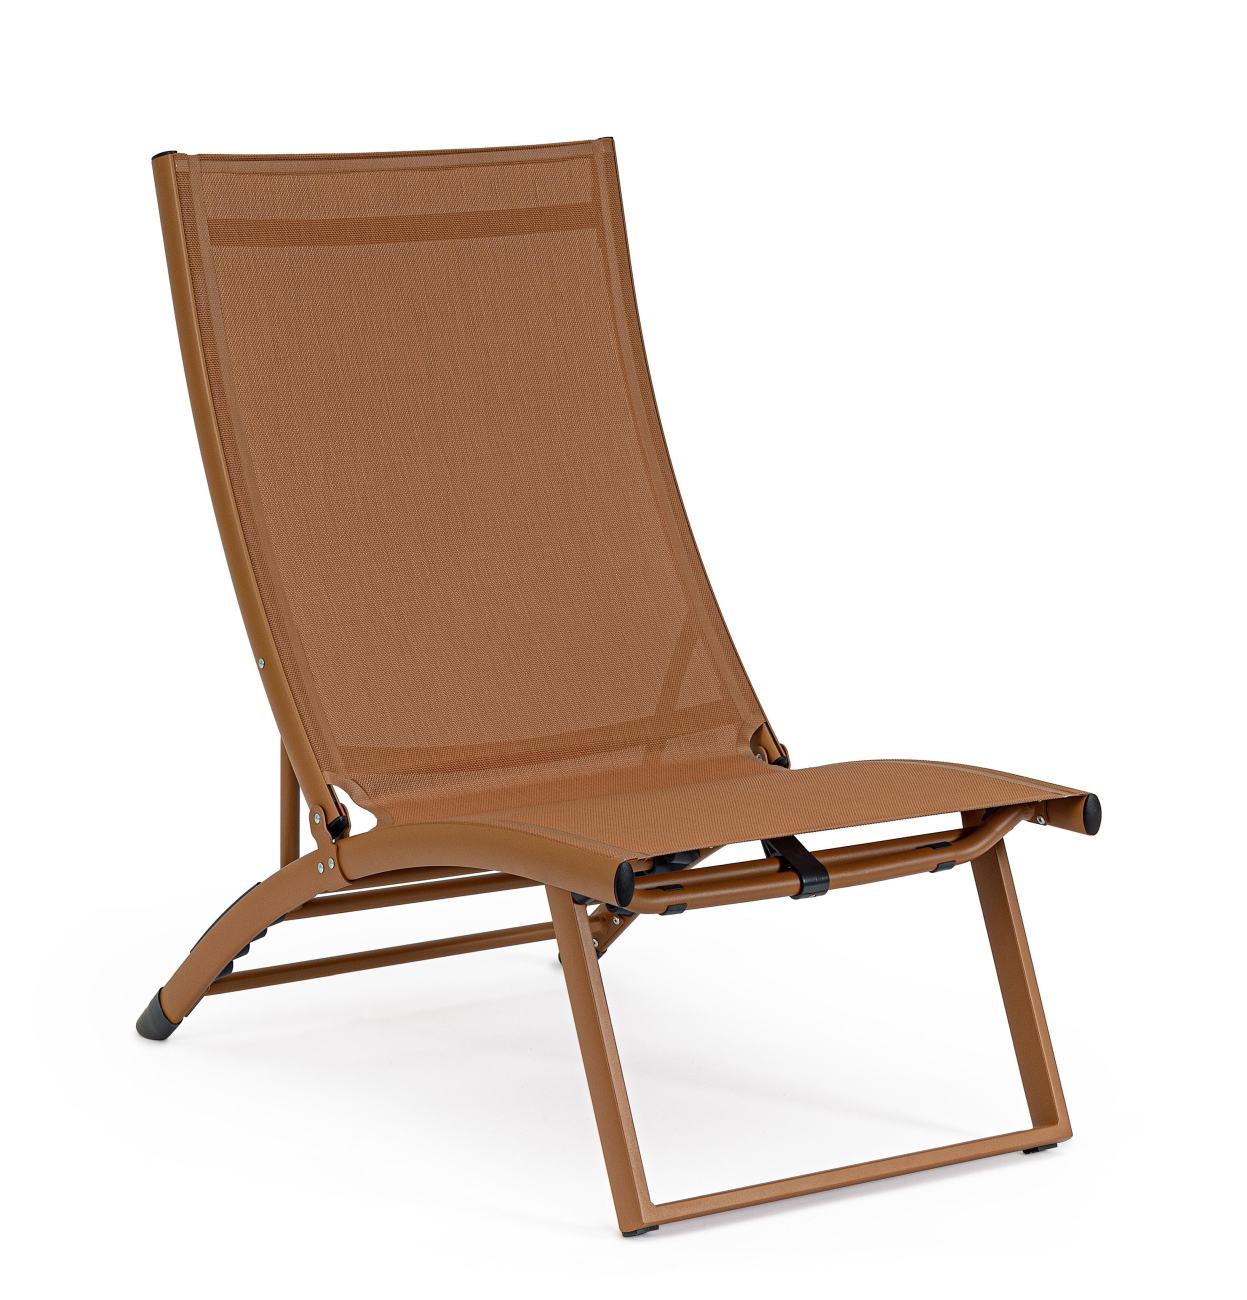 Der Loungesessel Taylor überzeugt mit seinem modernen Design. Gefertigt wurde er aus Textilene, welches einen braunen Farbton besitzt. Das Gestell ist aus Metall und hat eine braune Farbe. Der Sessel ist klappbar.